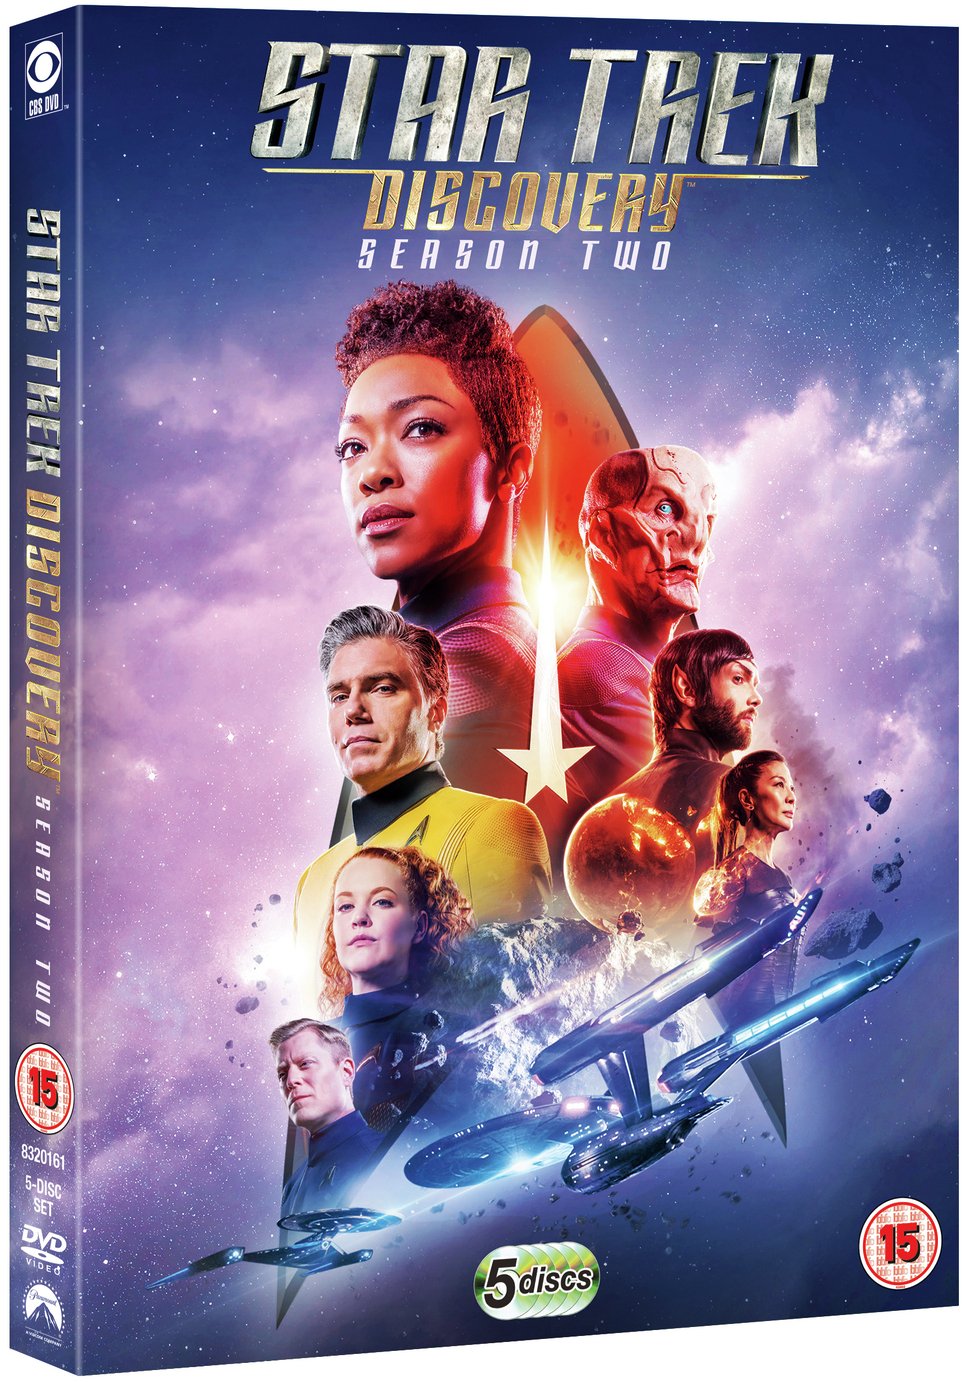 Star Trek Discovery Season 2 DVD Box Set Review